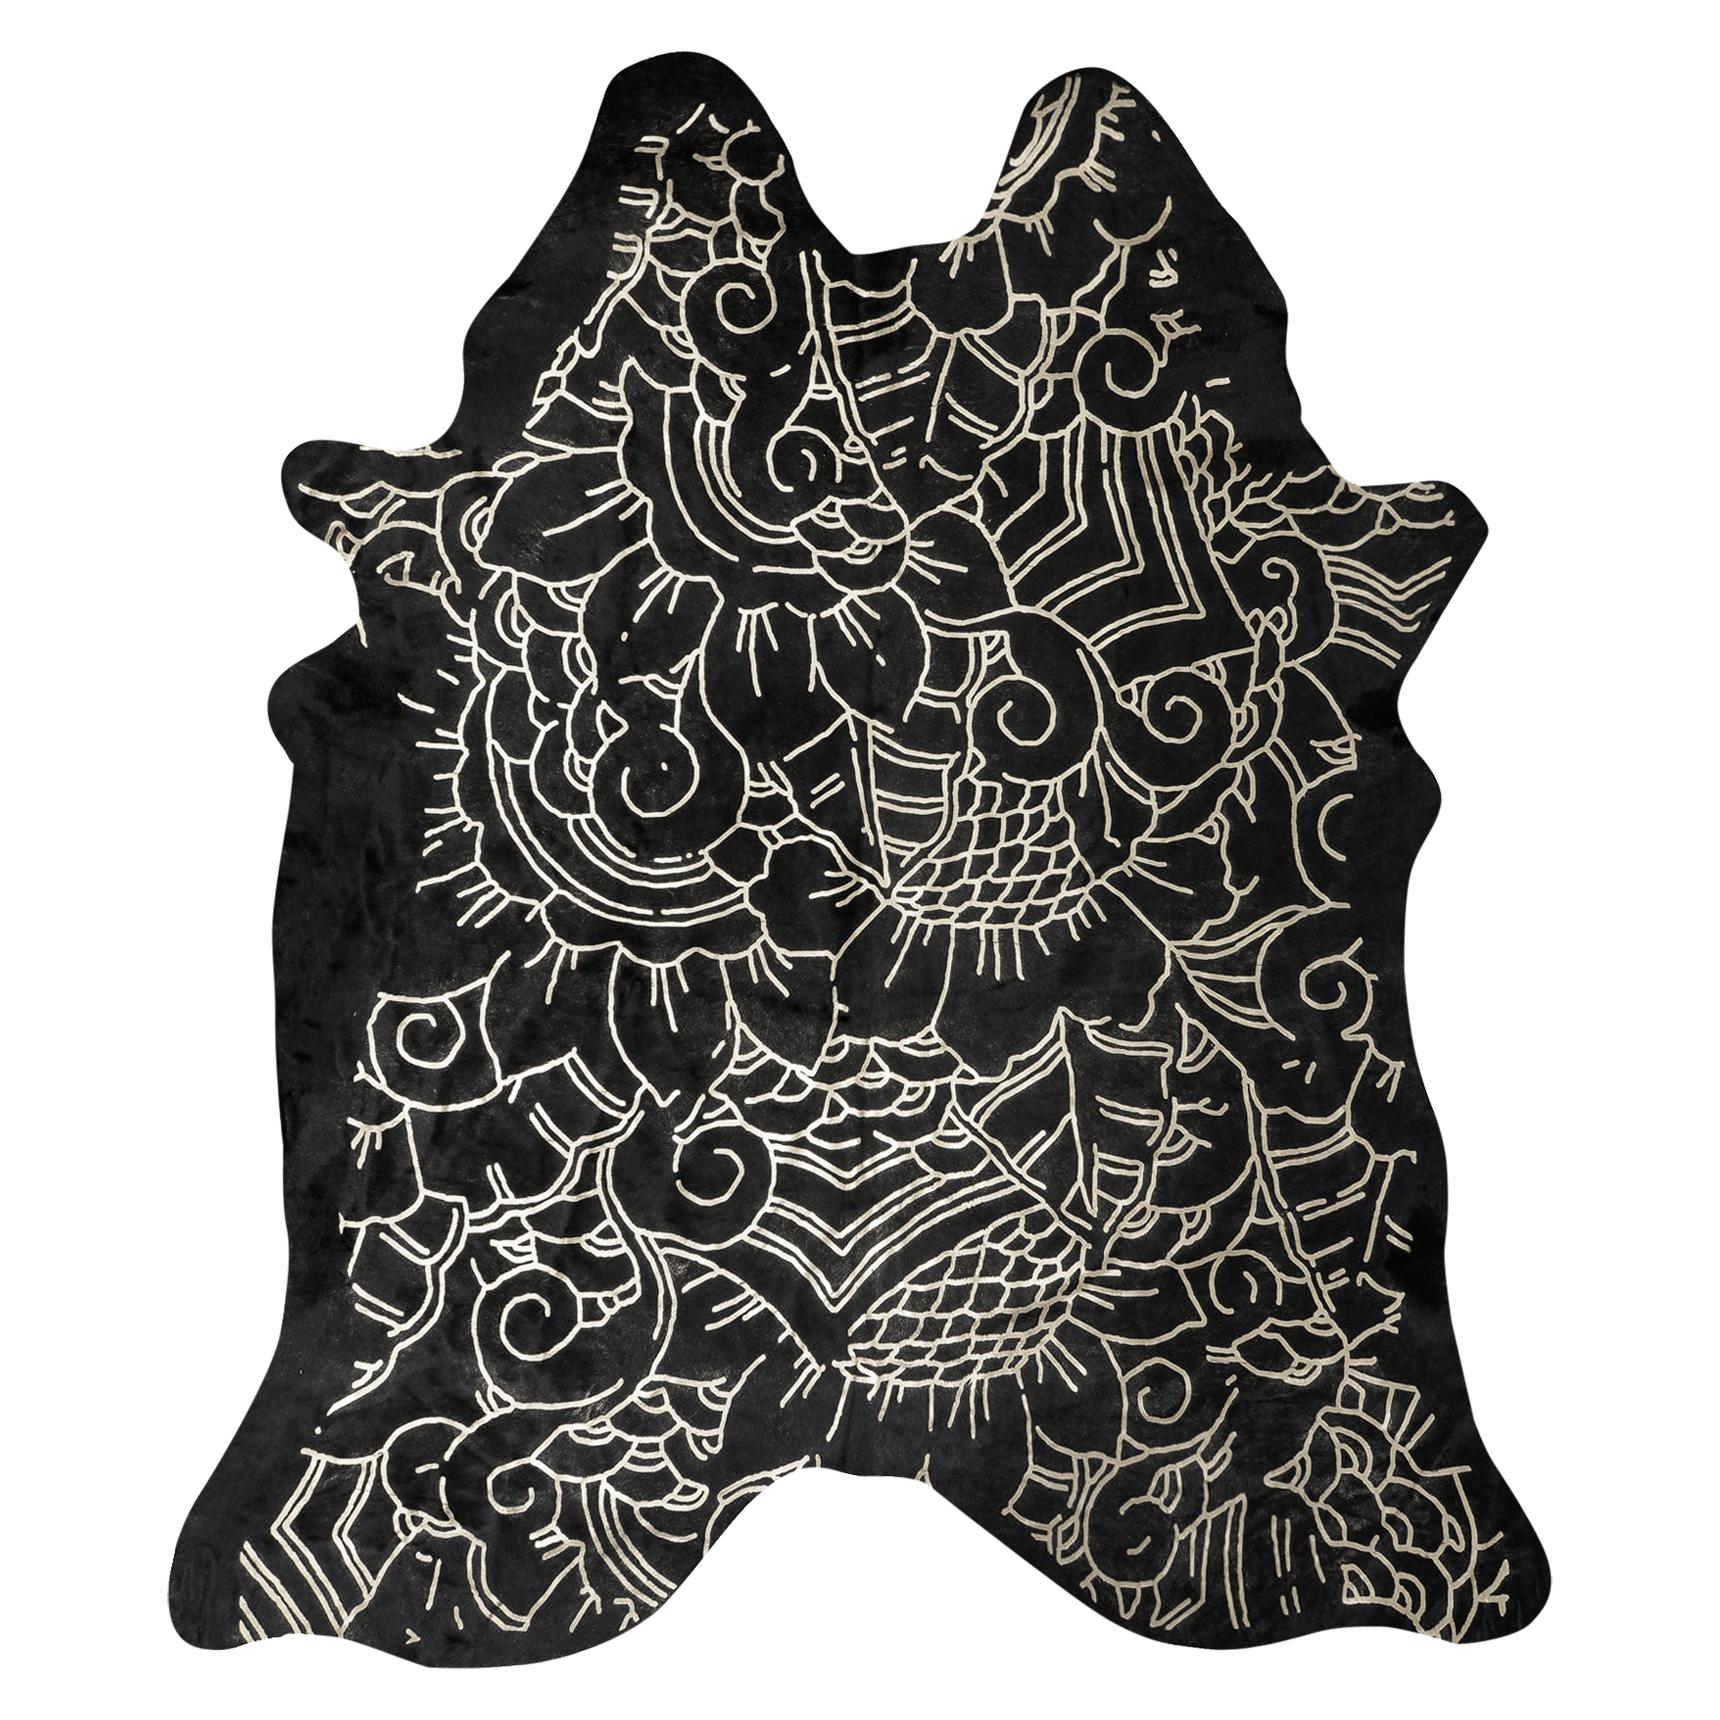 Silver Metallic Boho Batik Pattern Black Cowhide Rug, Large